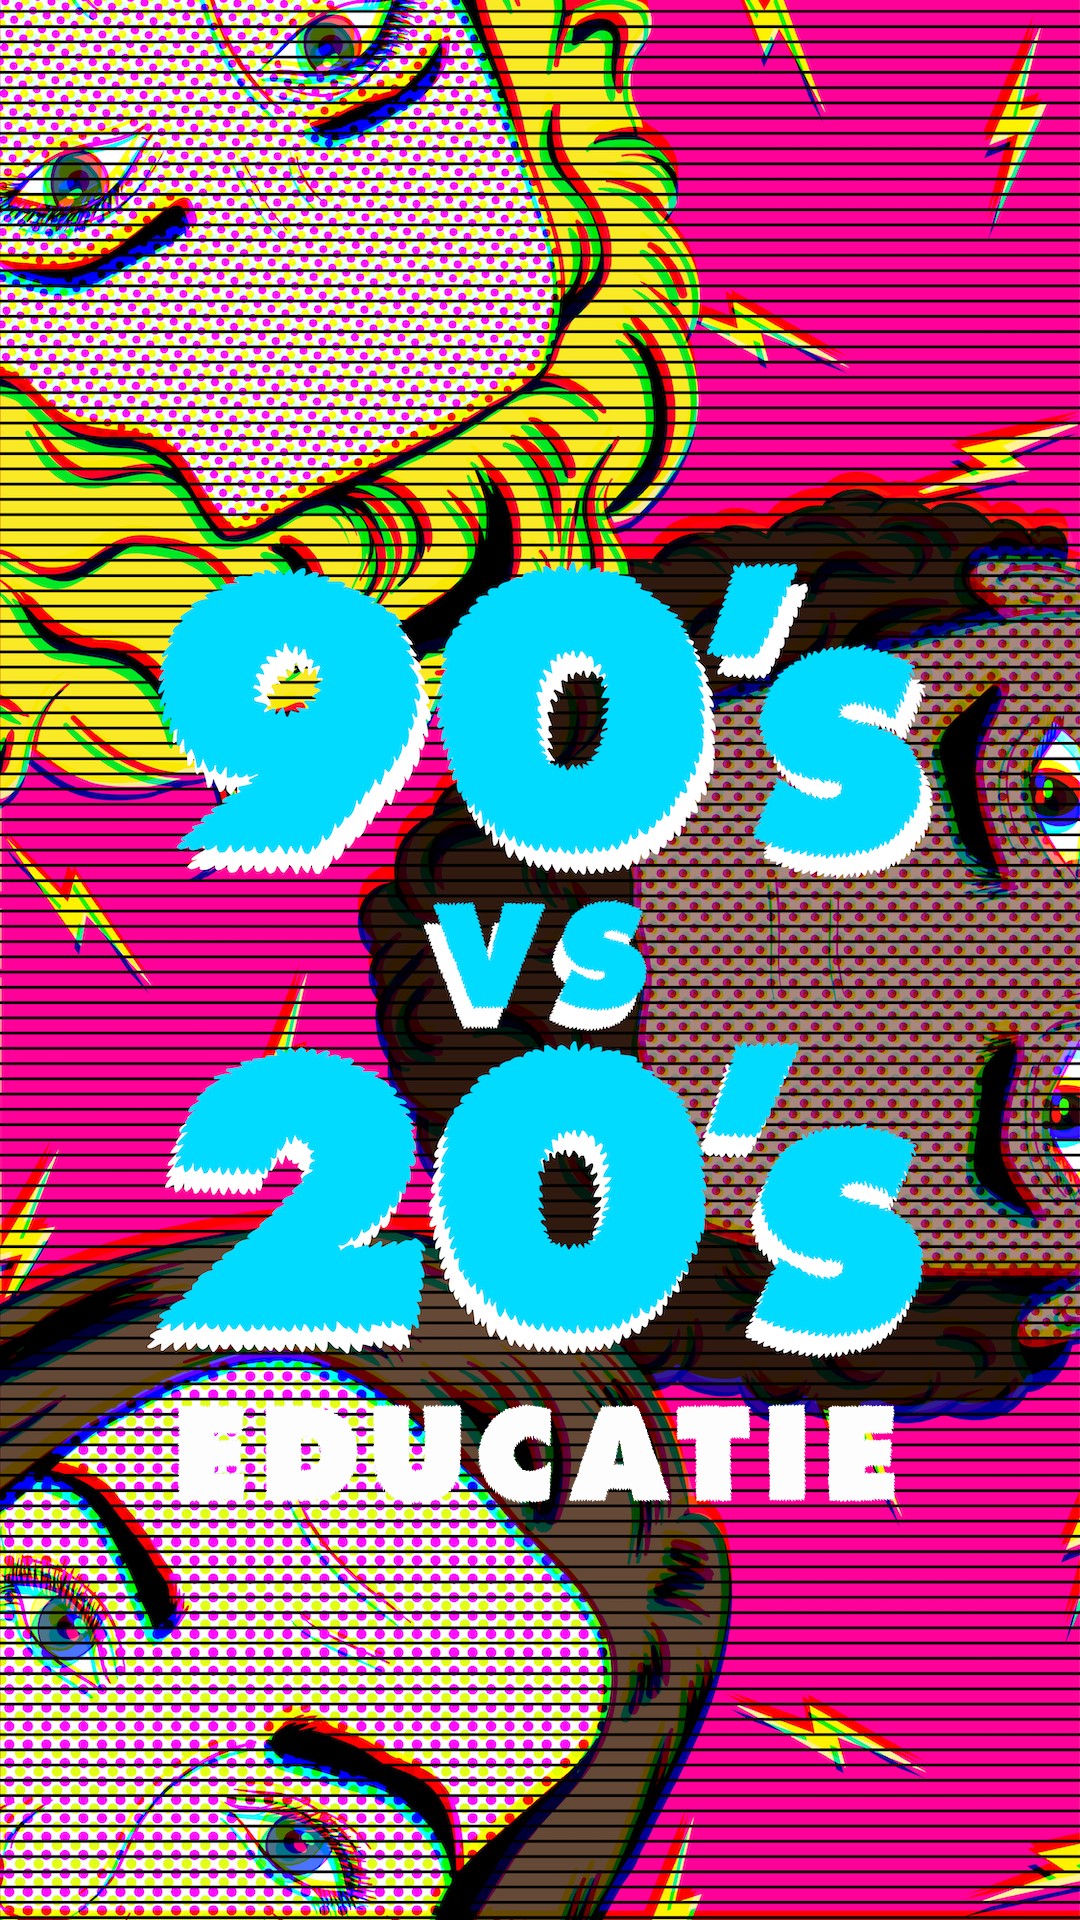 Educatie bij 90's vs 20's